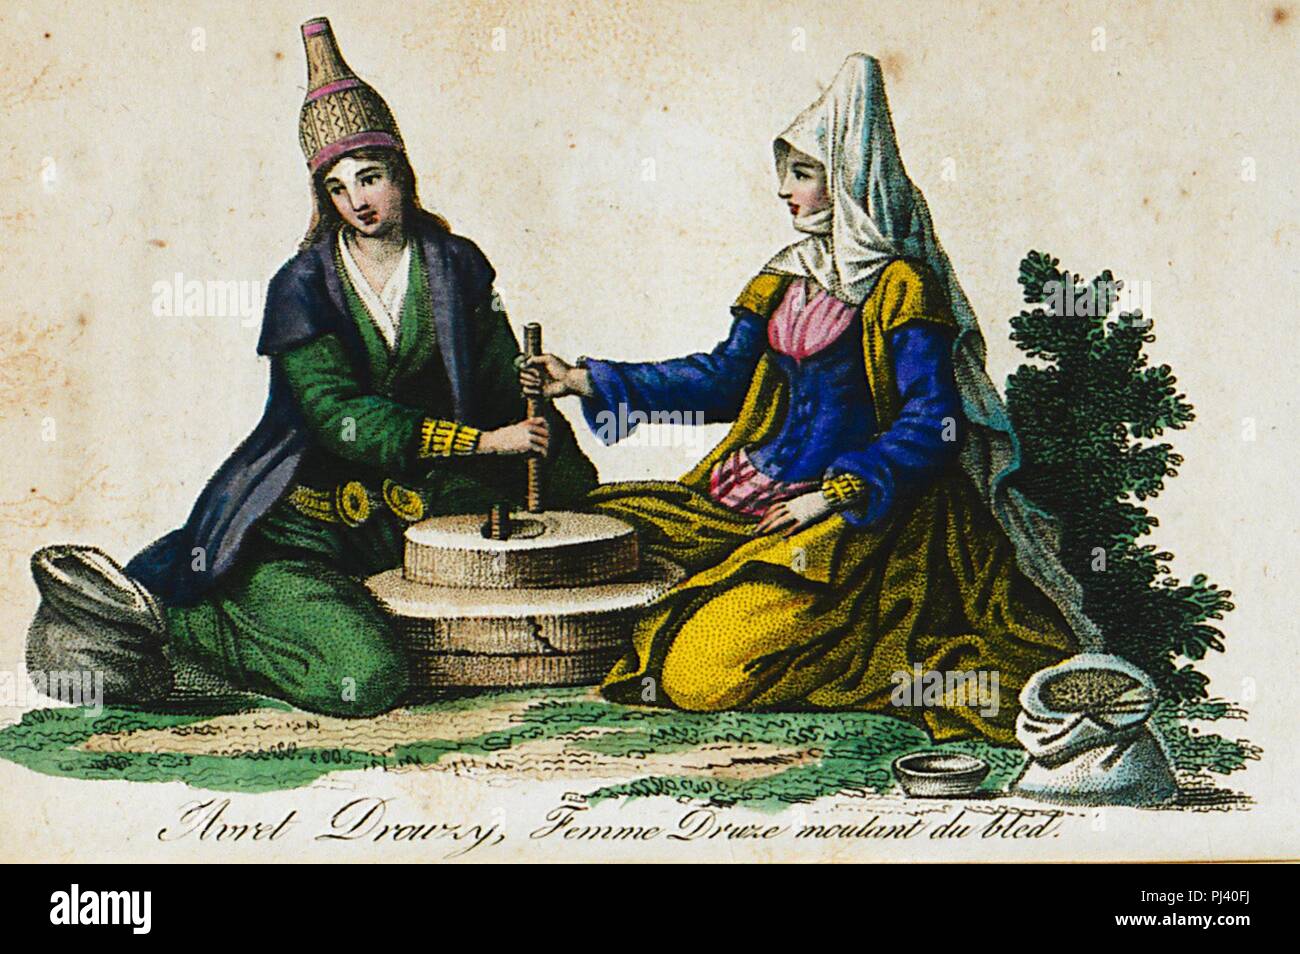 Avret drouzy, femme druze moulant du bled - Castellan Antoine-laurent - 1812. Stock Photo